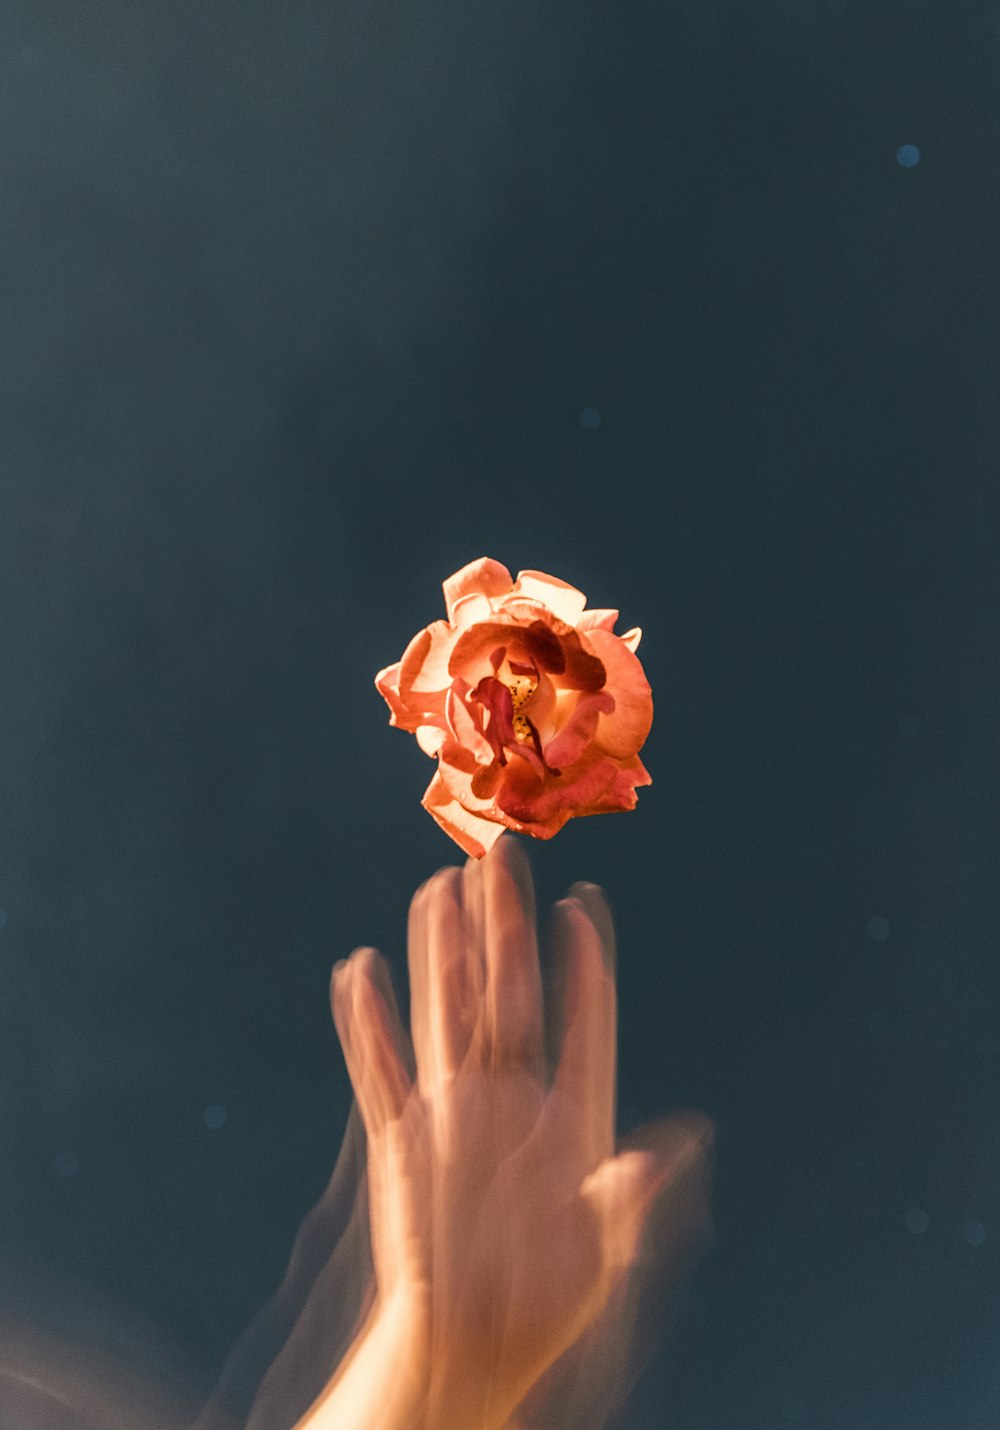 person throwing orange rose flower